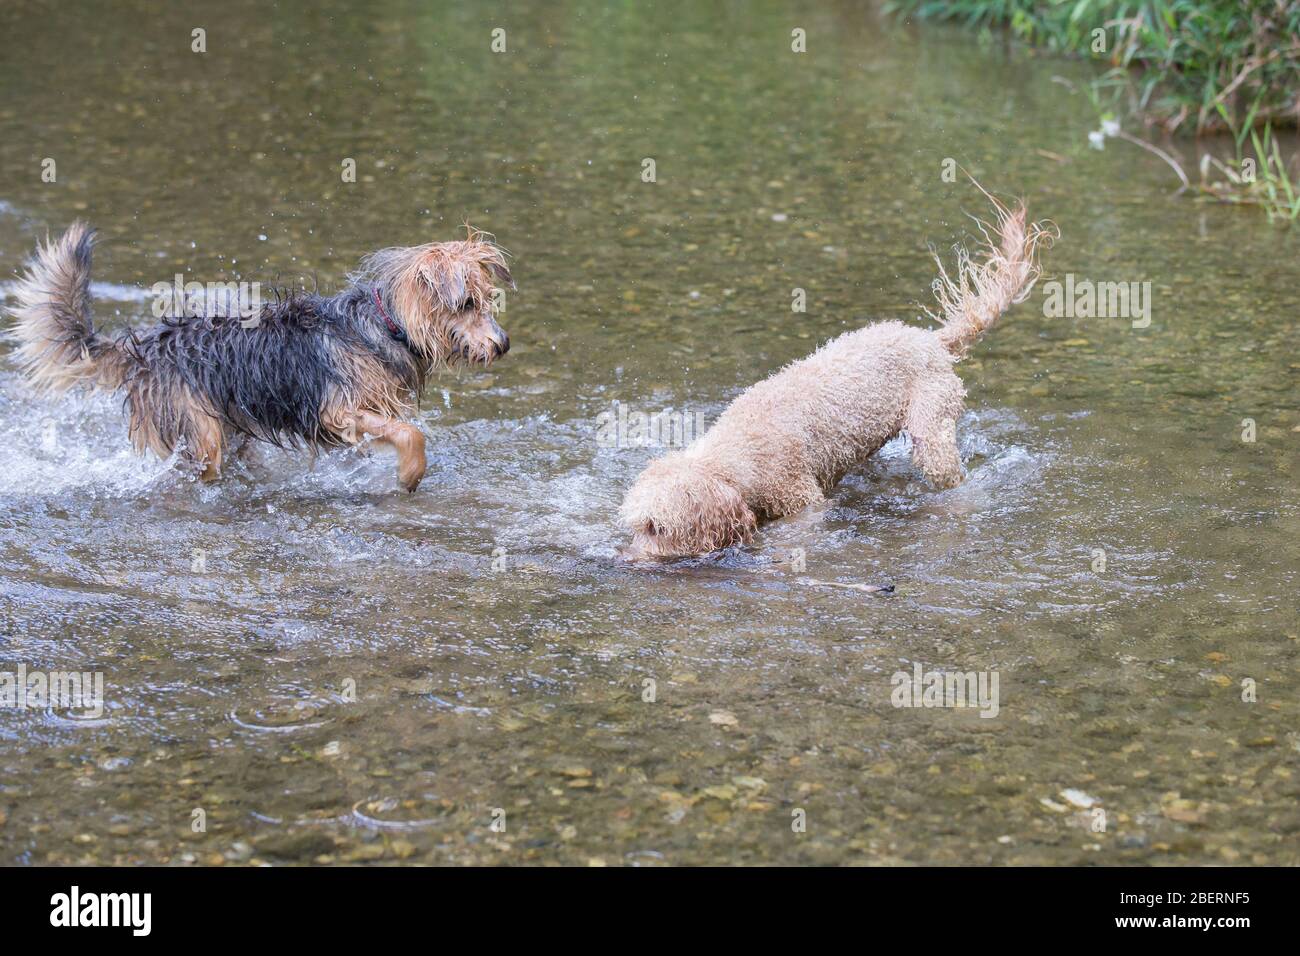 Junger Terrier und ein Pudel, der in den Fluss läuft. Zwei glückliche Hunde spielen an einem sonnigen Tag im kalten Wasser eines kleinen Flusses, Leitha, Österreich Stockfoto